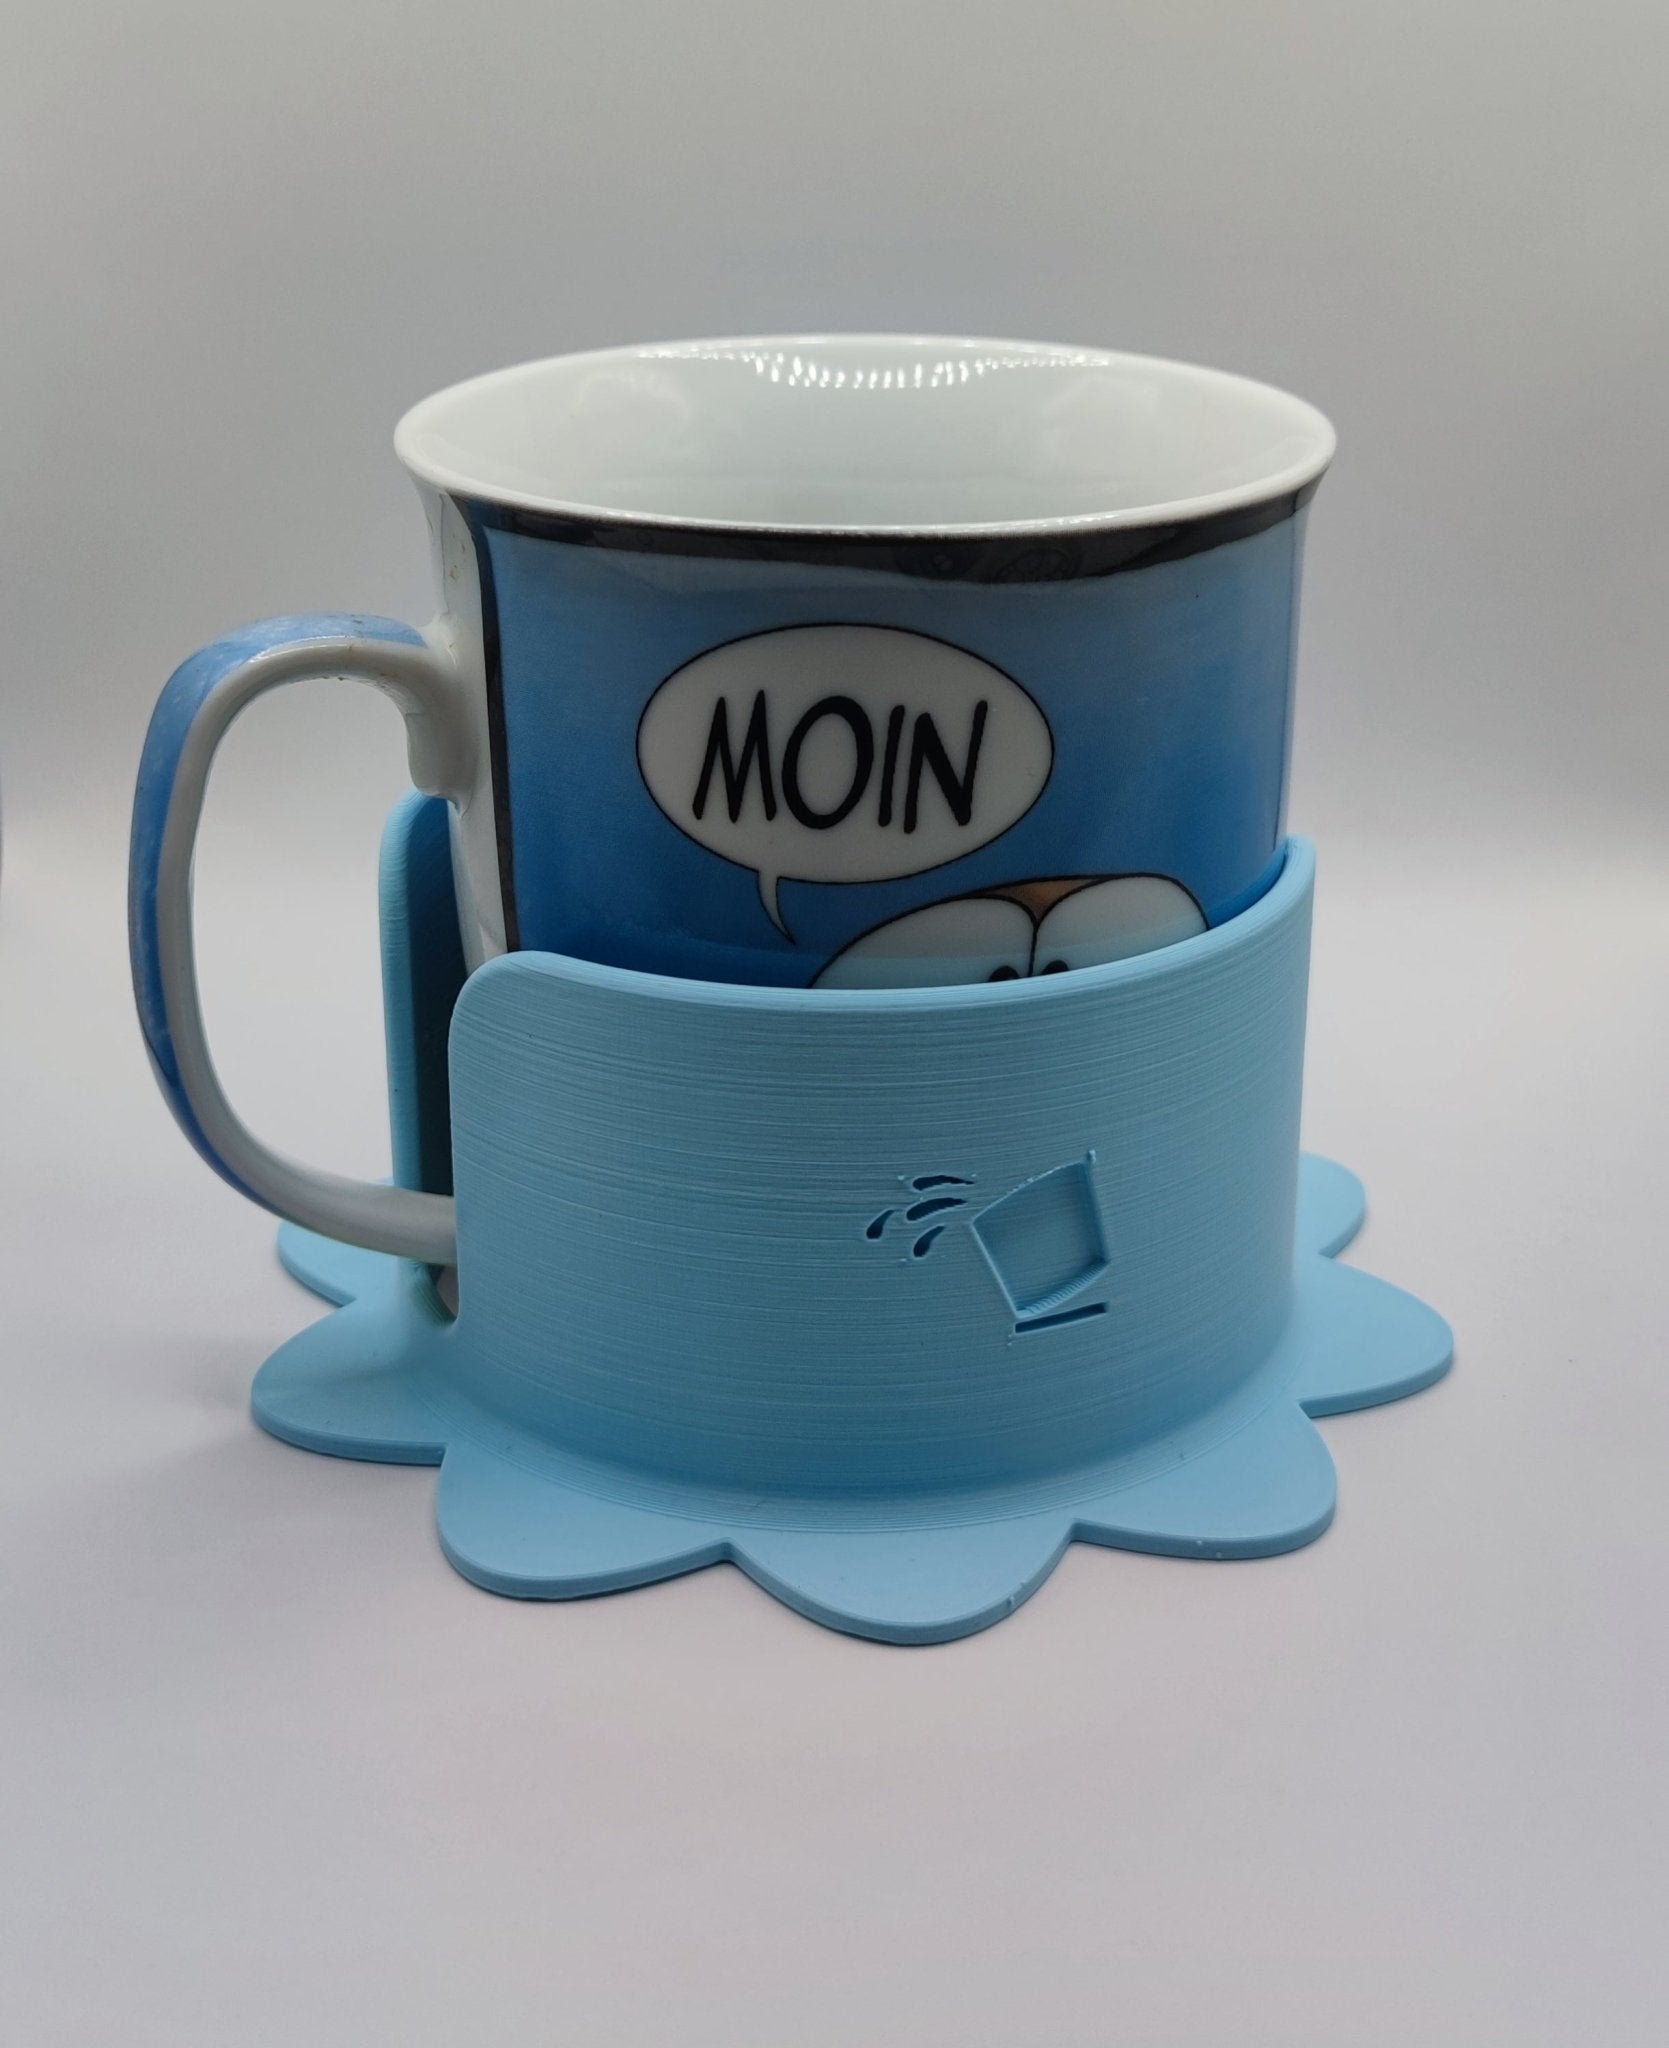 Getränkehalterung für Kaffeetasse oder Teetasse mit 10 cm Durchmesser - Überschwapp